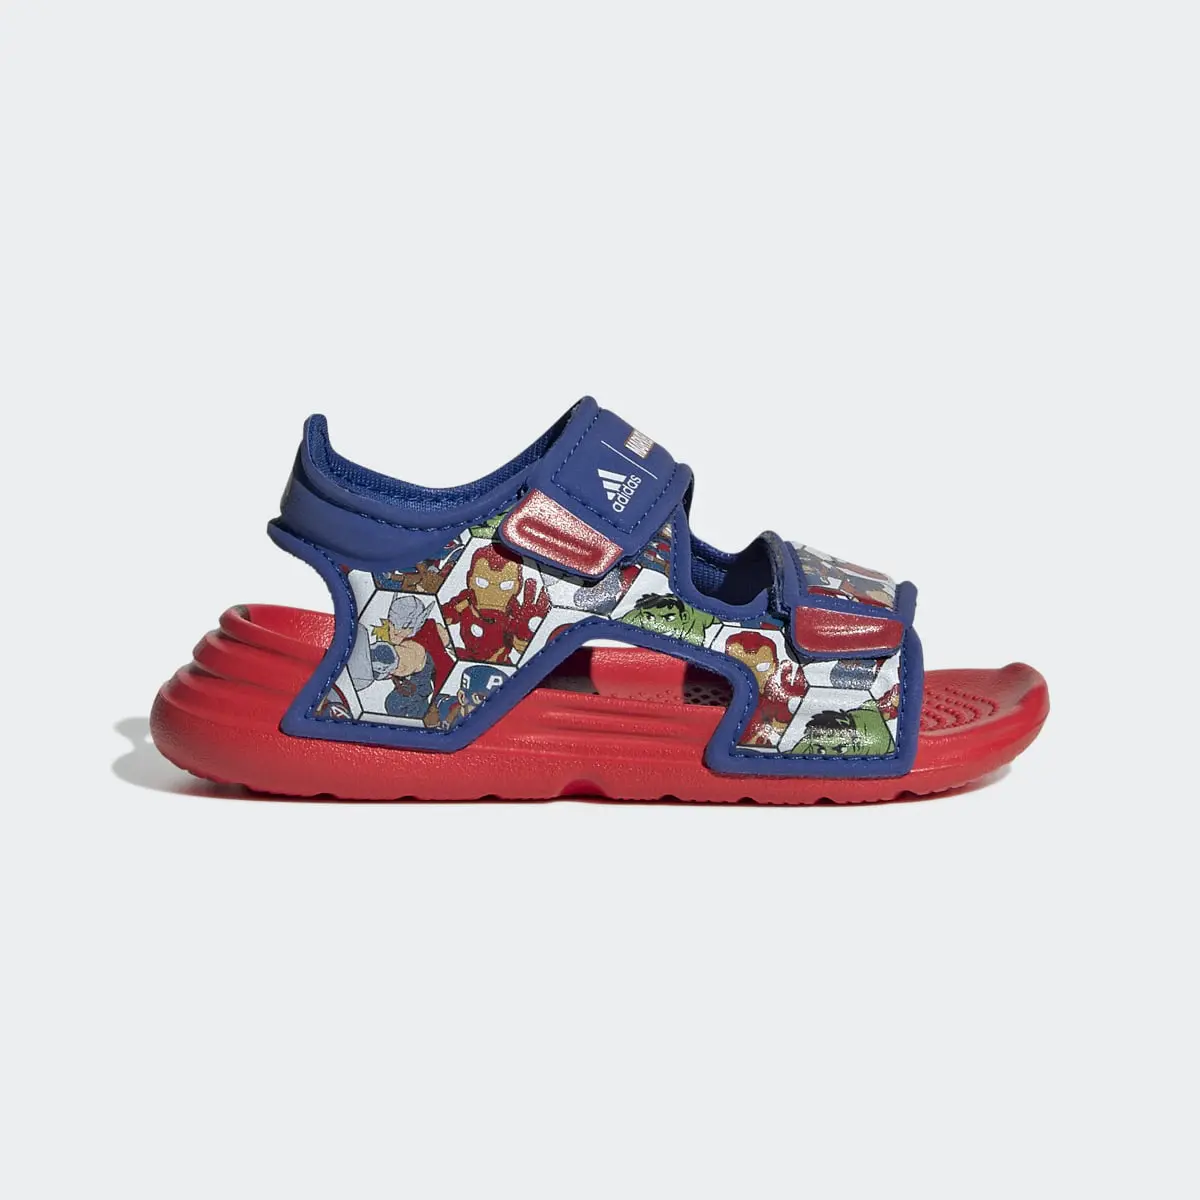 Adidas x Marvel AltaSwim Super Hero Adventures Sandals. 2